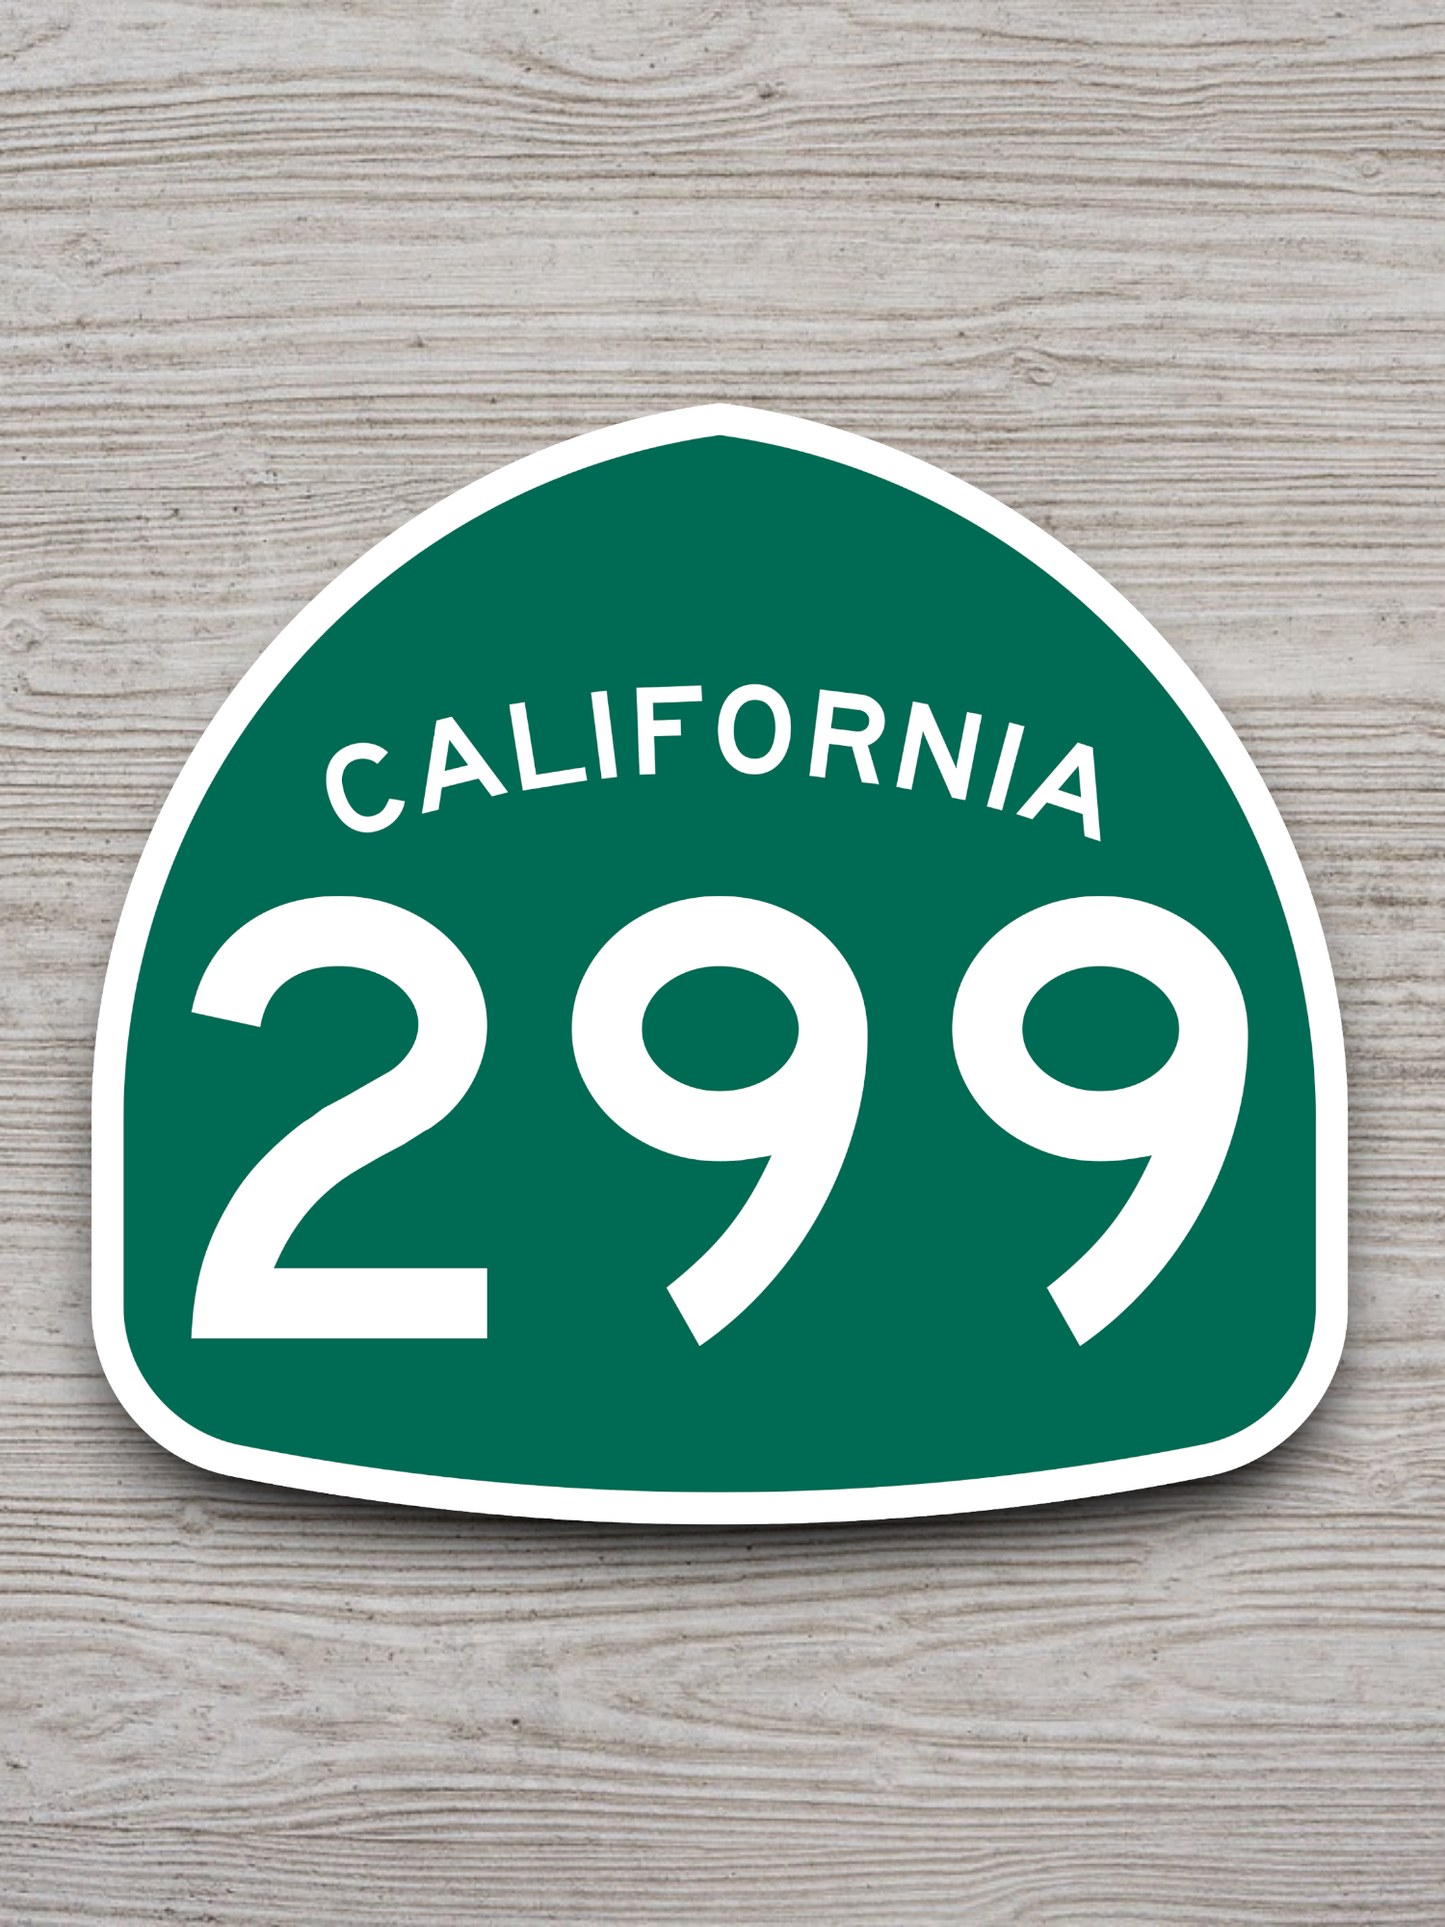 California State Route 299 Sticker